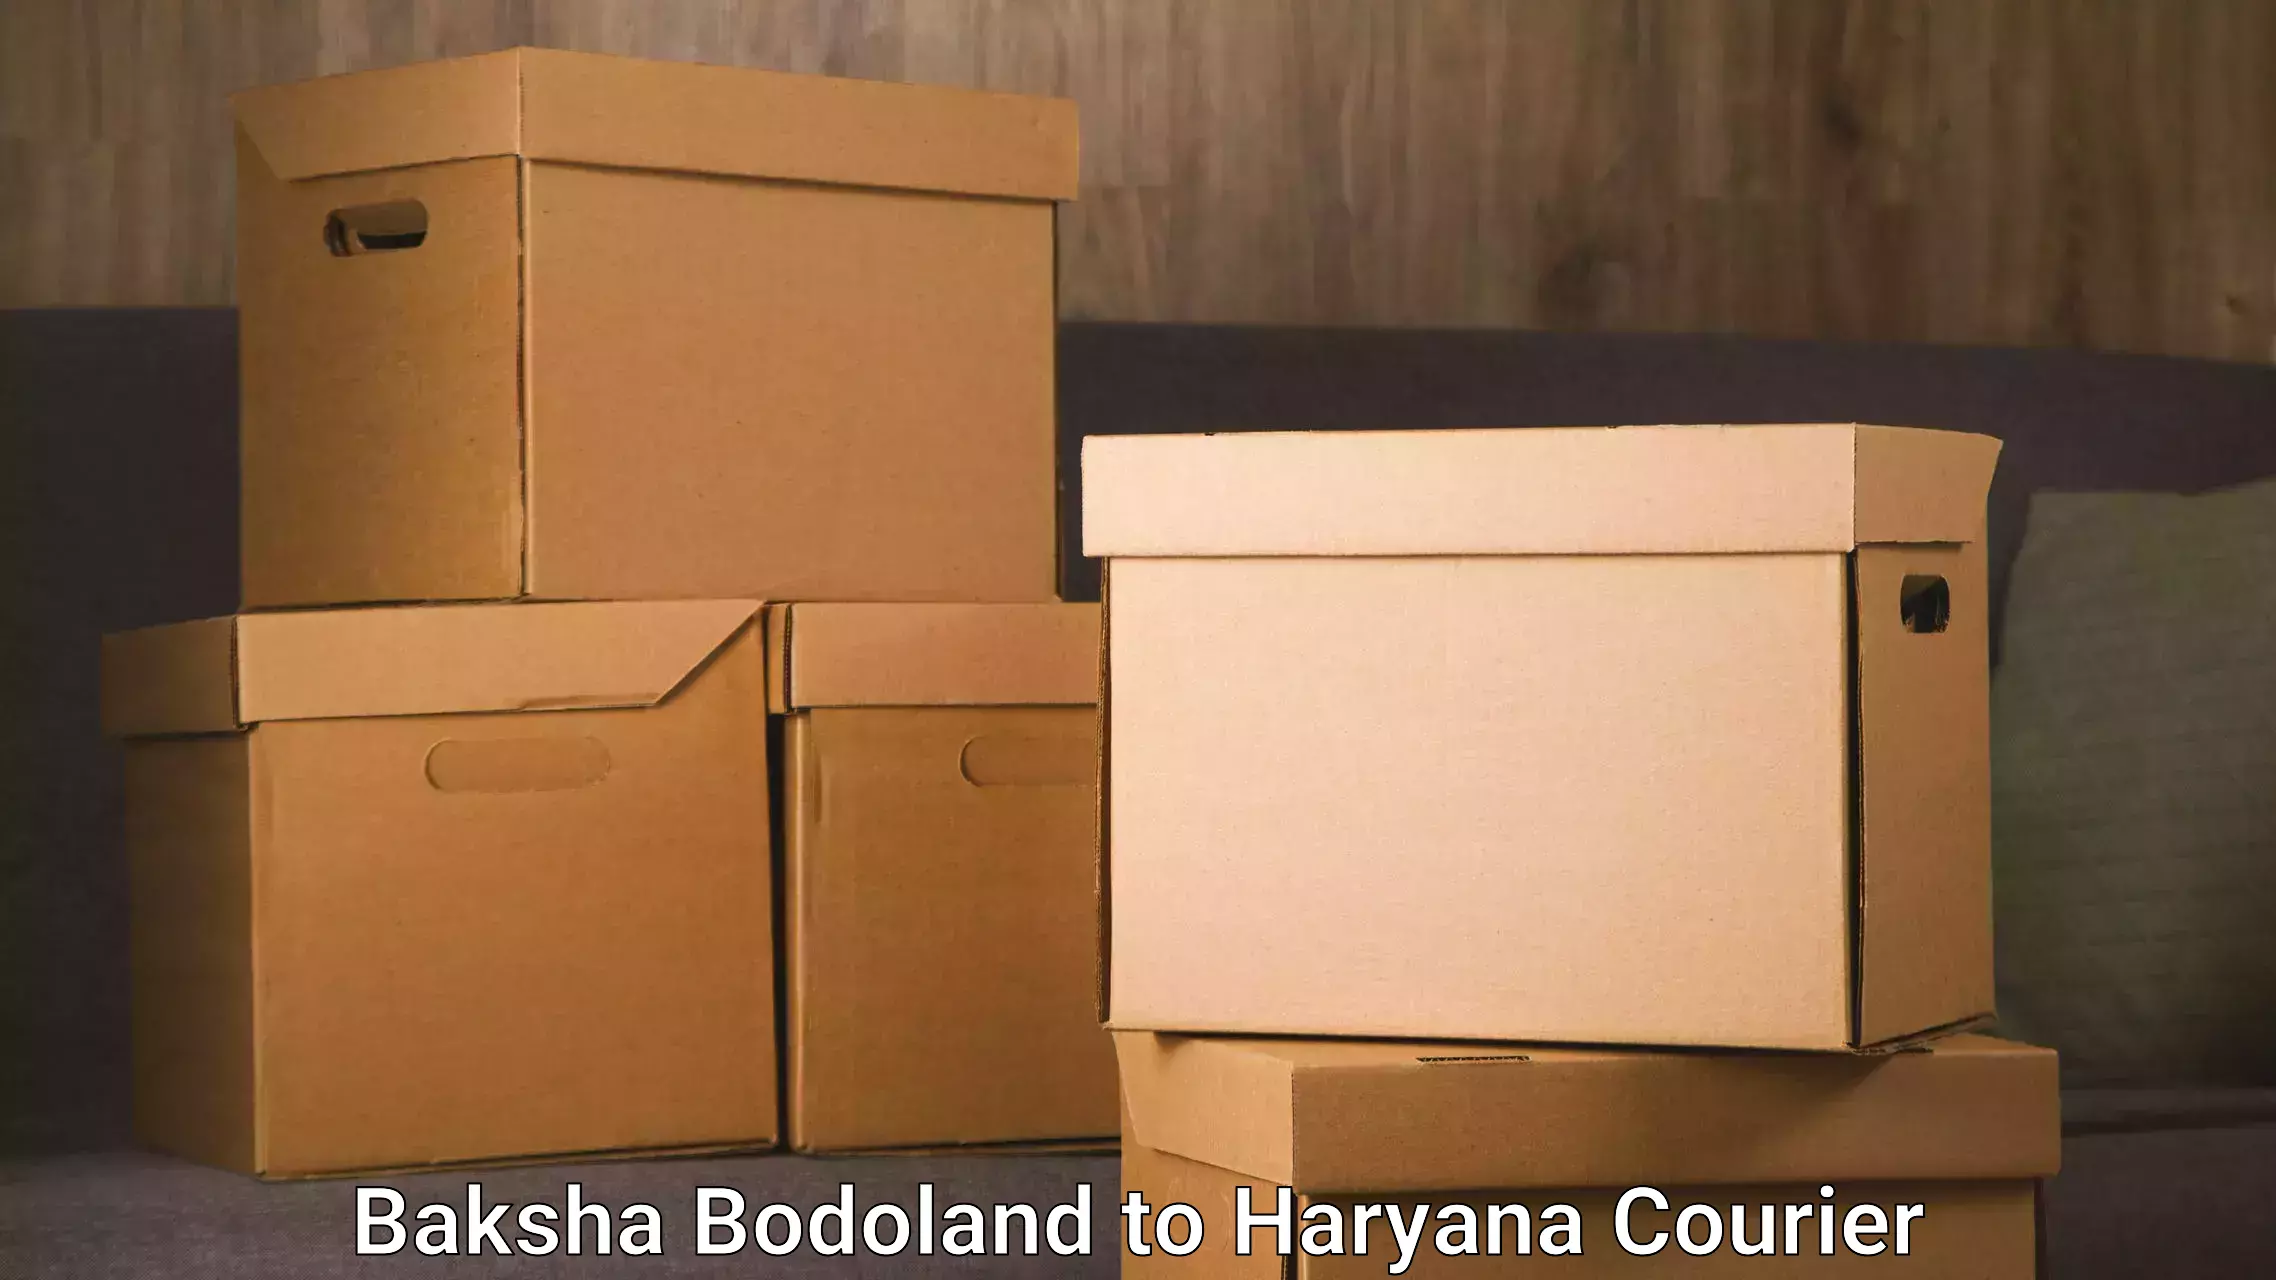 Express delivery network Baksha Bodoland to Hansi